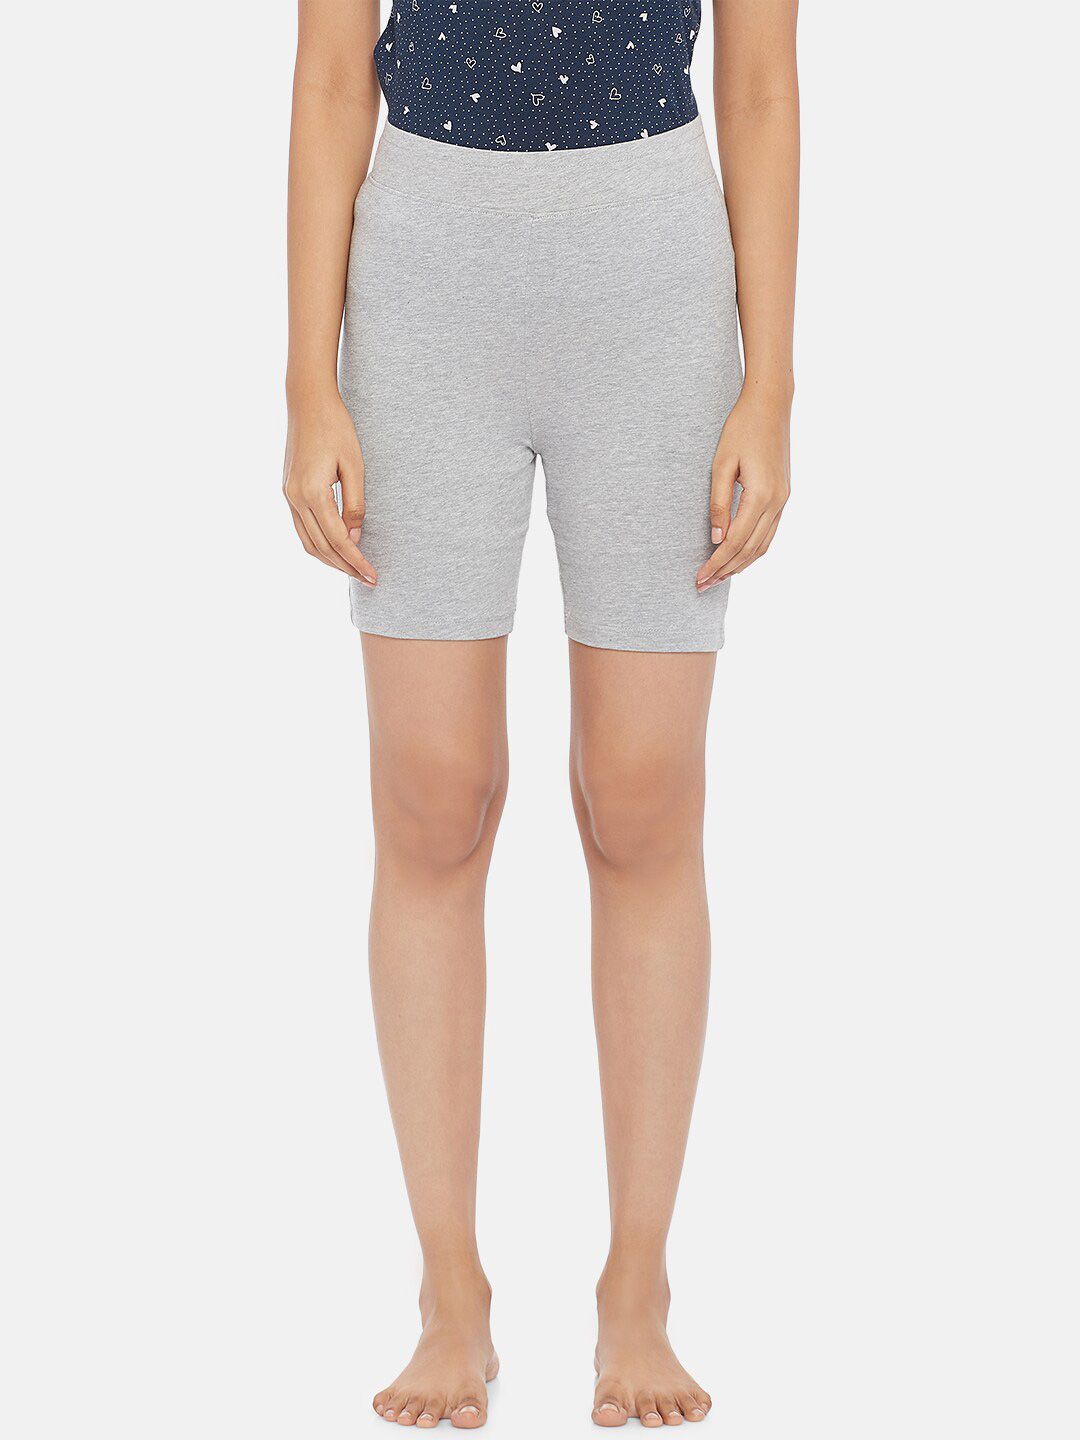 Dreamz by Pantaloons Women Grey Melange Lounge Shorts Price in India